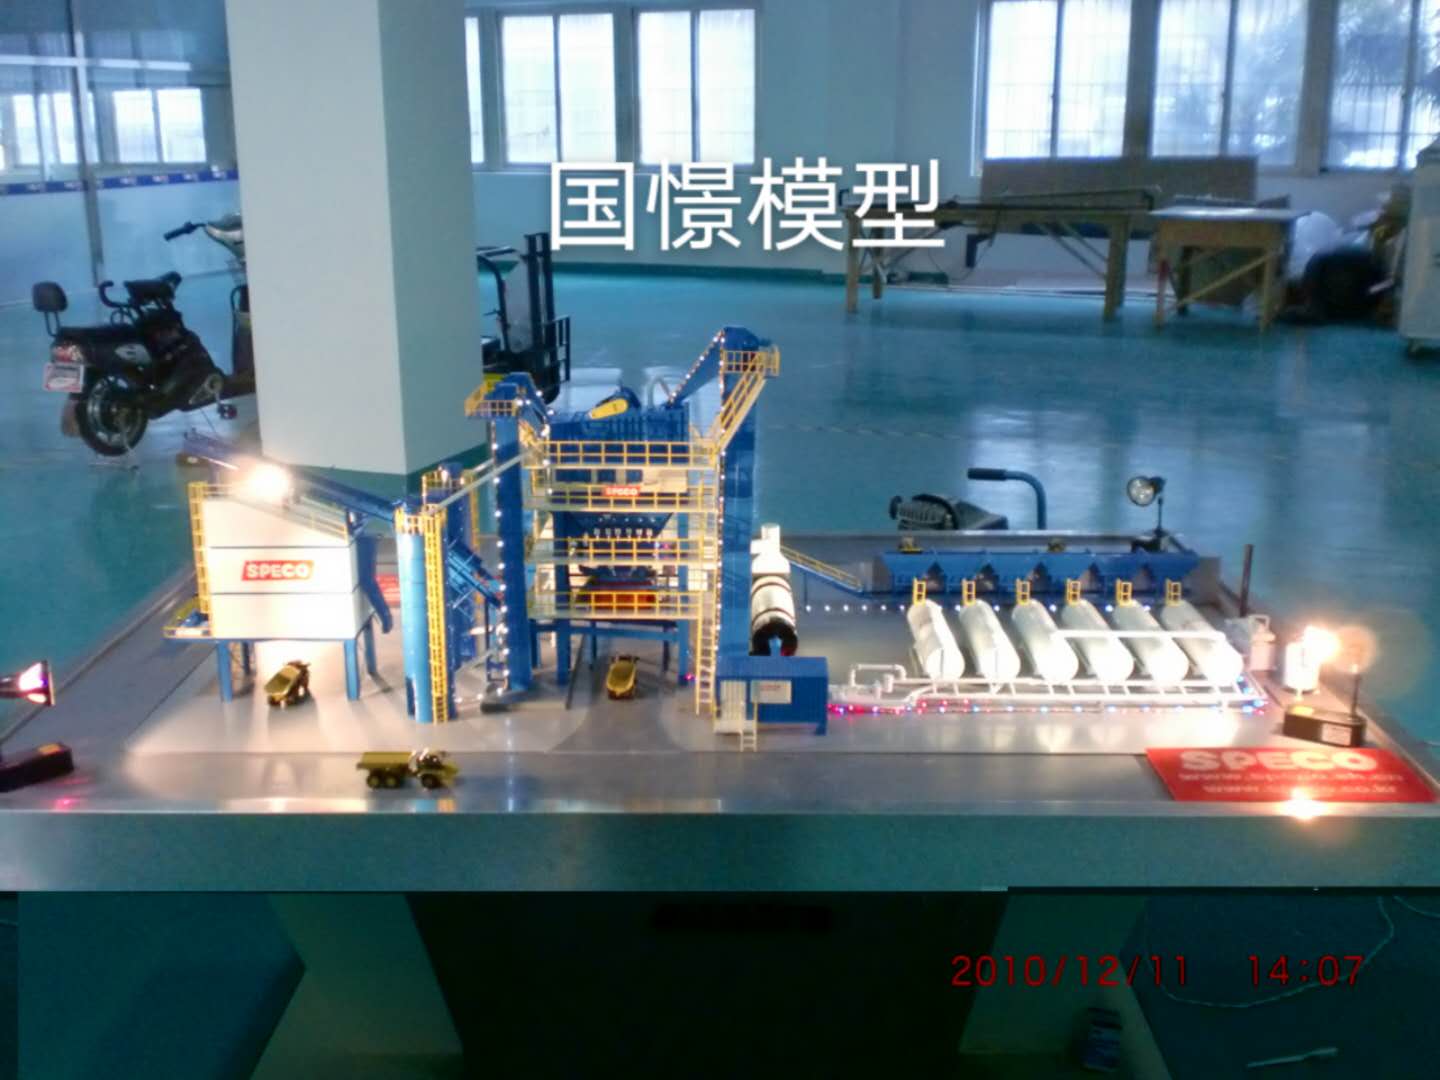 文山工业模型